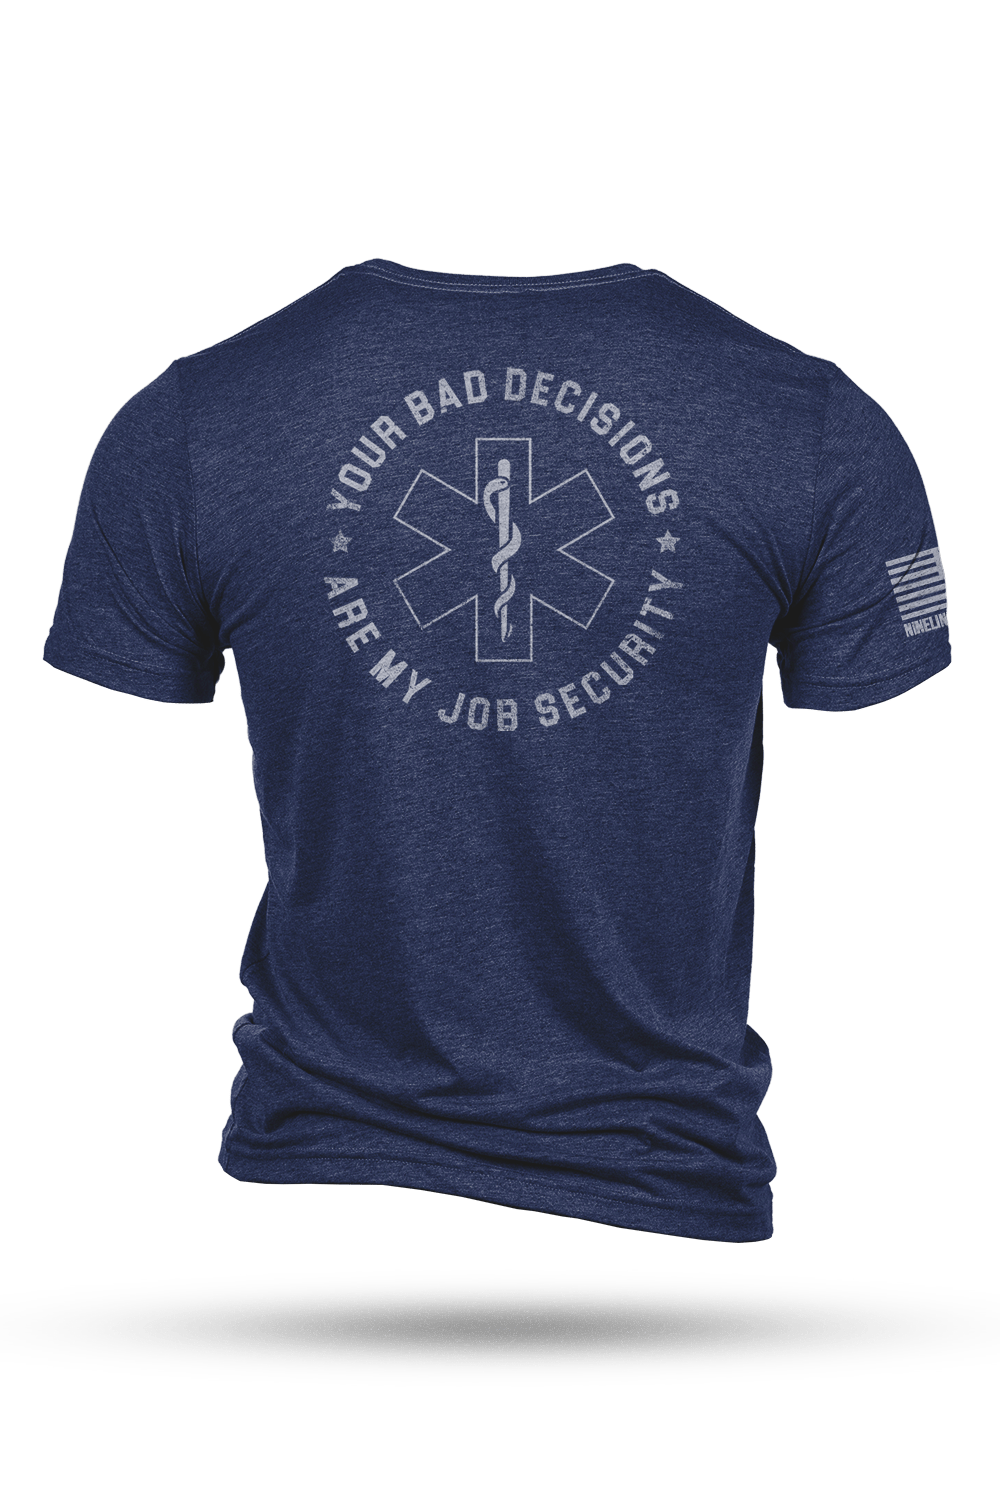 T-Shirt - Job Security